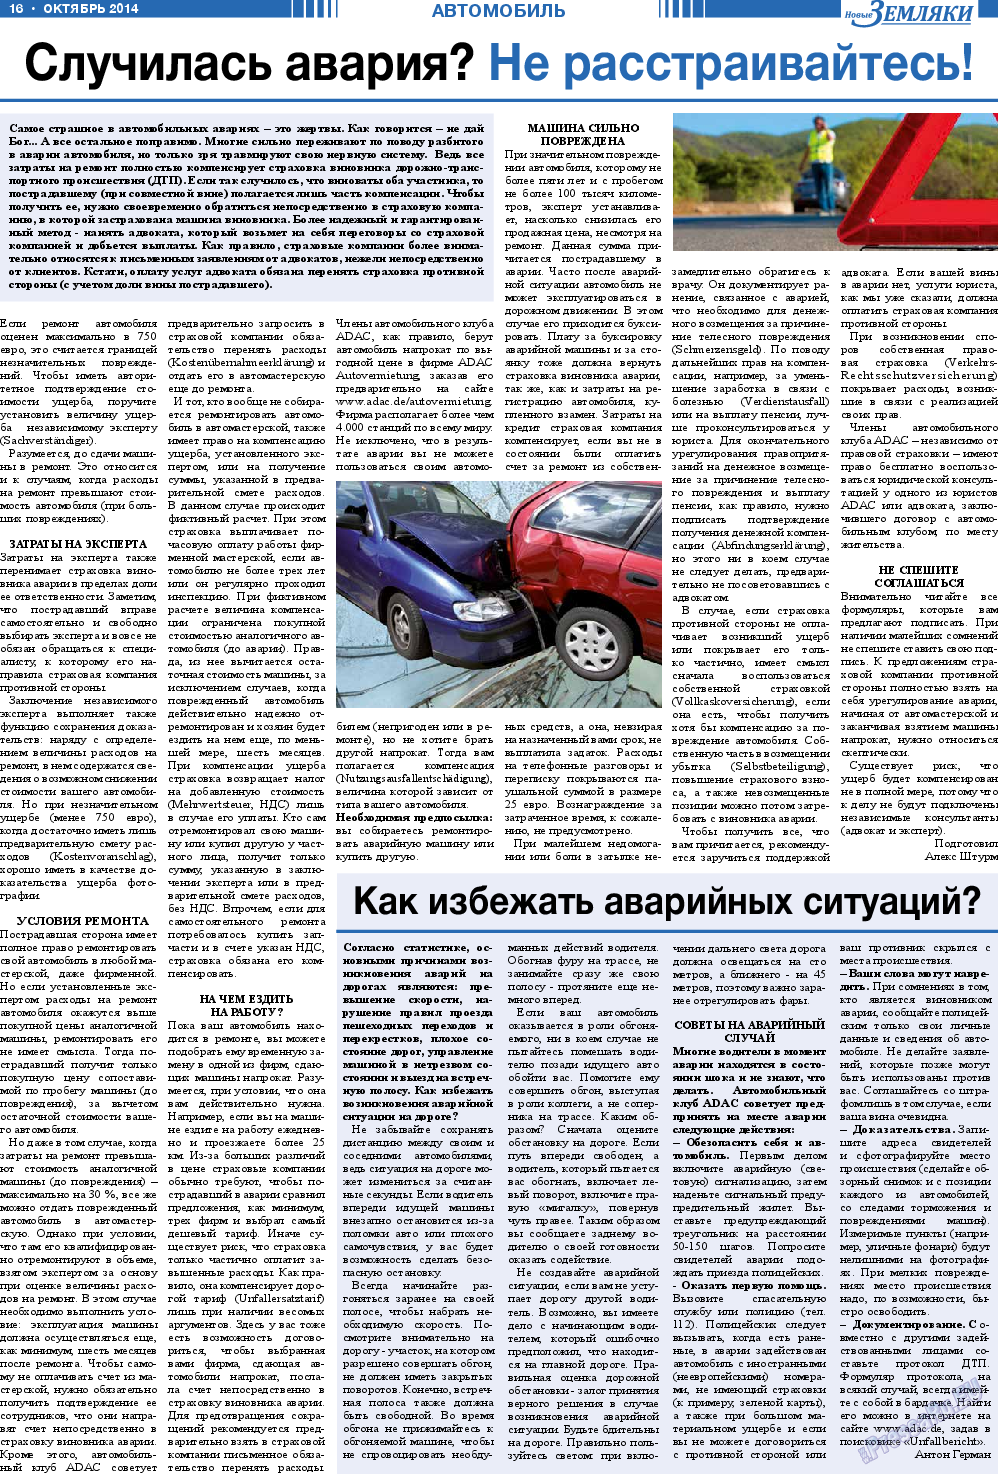 Новые Земляки, газета. 2014 №10 стр.16